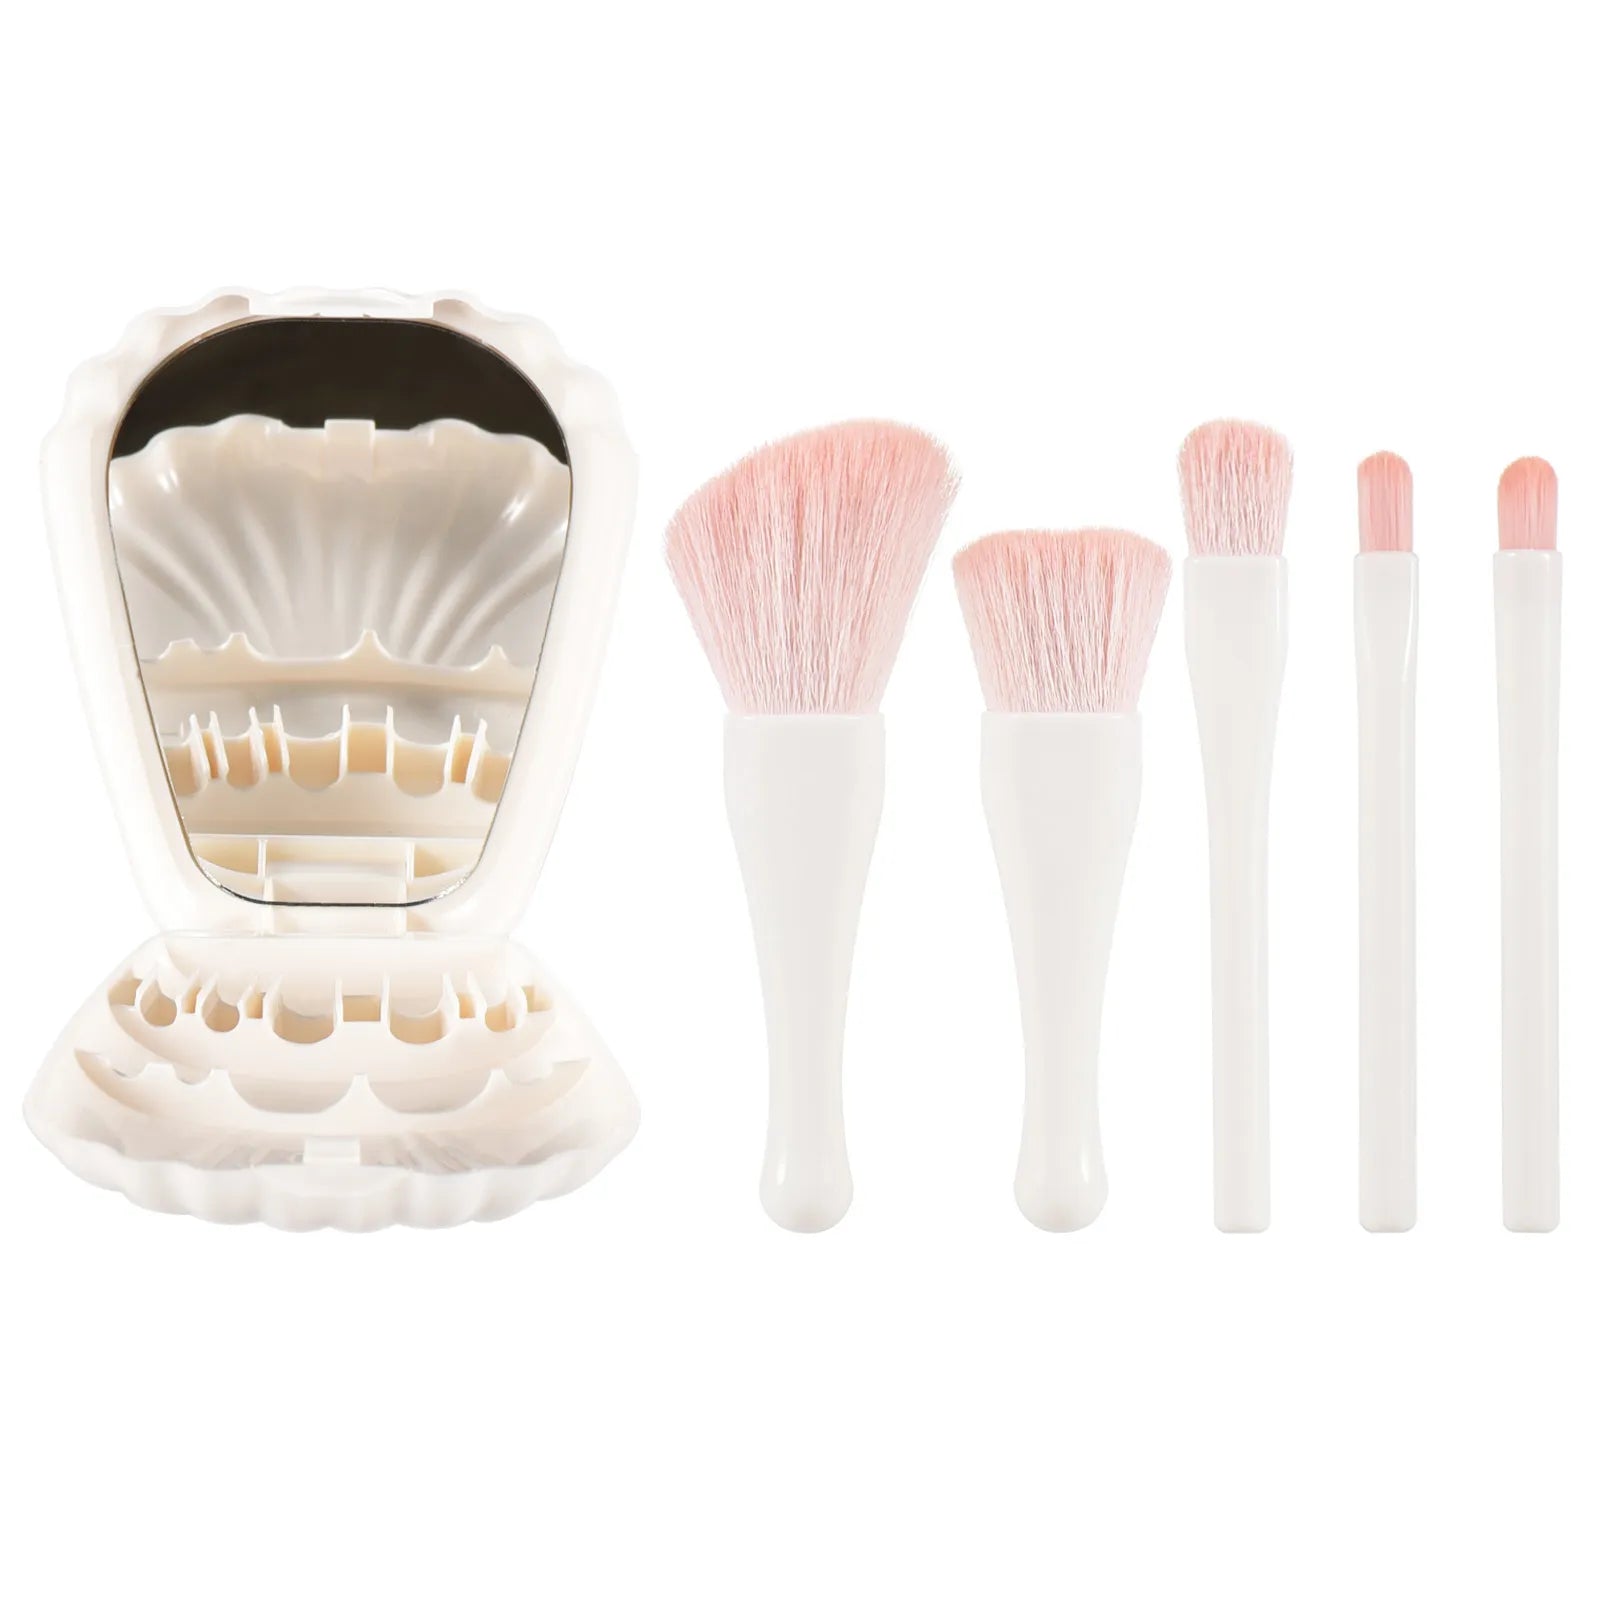 Mini Makeup Brush Set for Flawless Blending